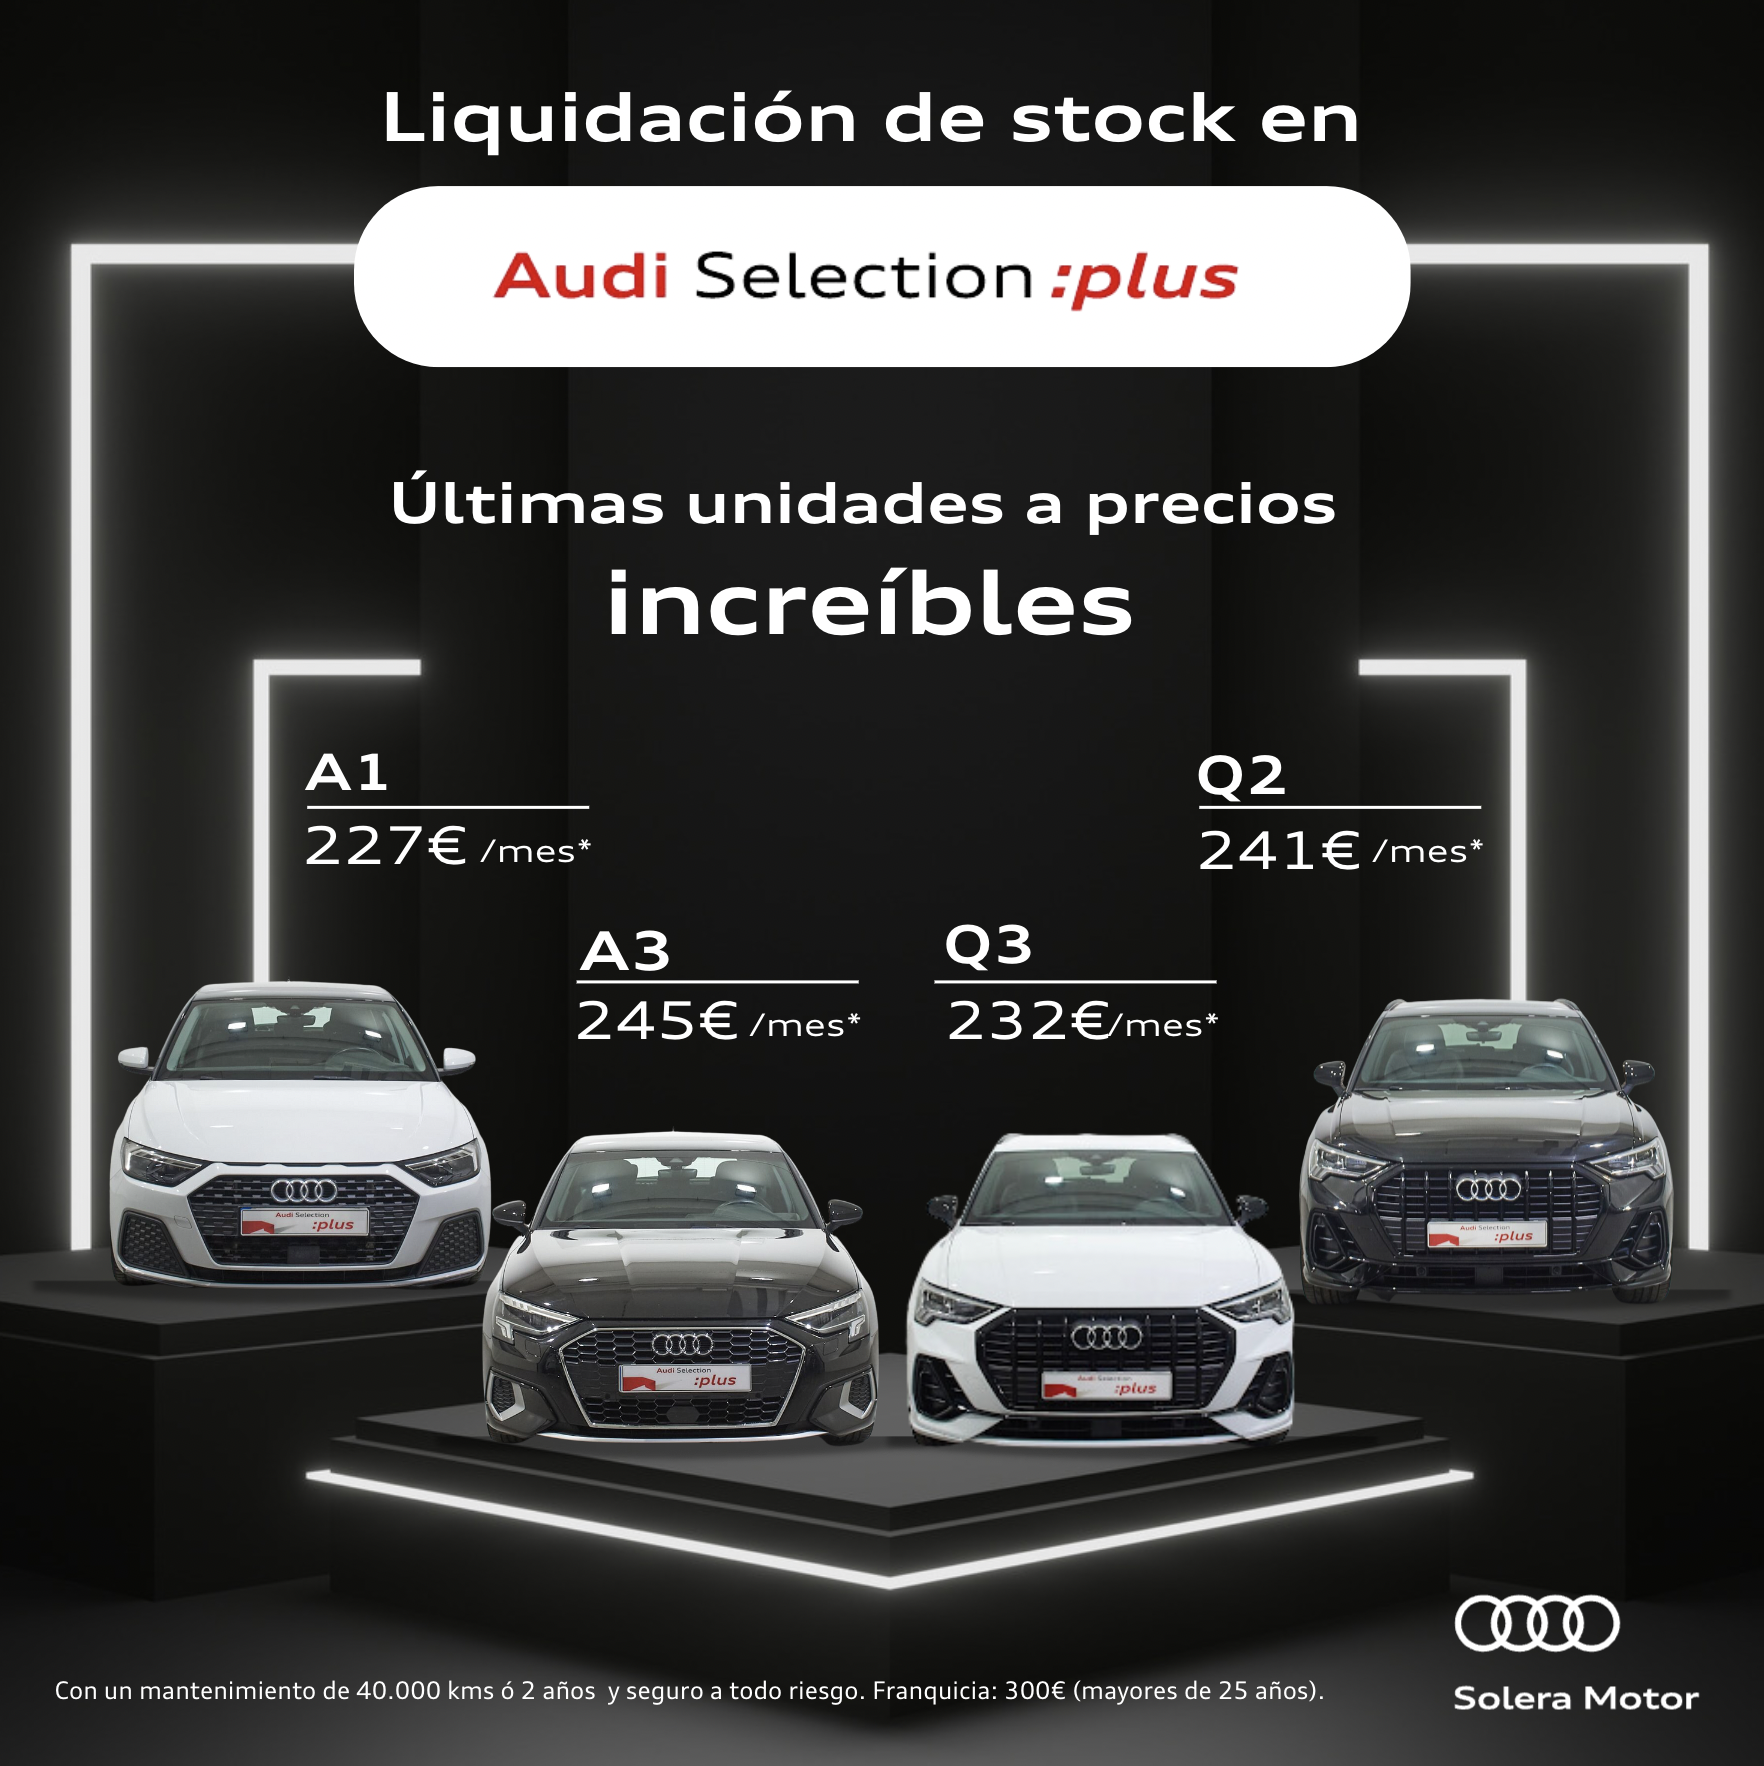 Liquidación de stock en Audi Selection :plus: ¡Últimas unidades a precios increíbles!
Disfruta de un Audi A1, A3, Q2 y Q3 con Audi Opción y vive tu momento Audi.